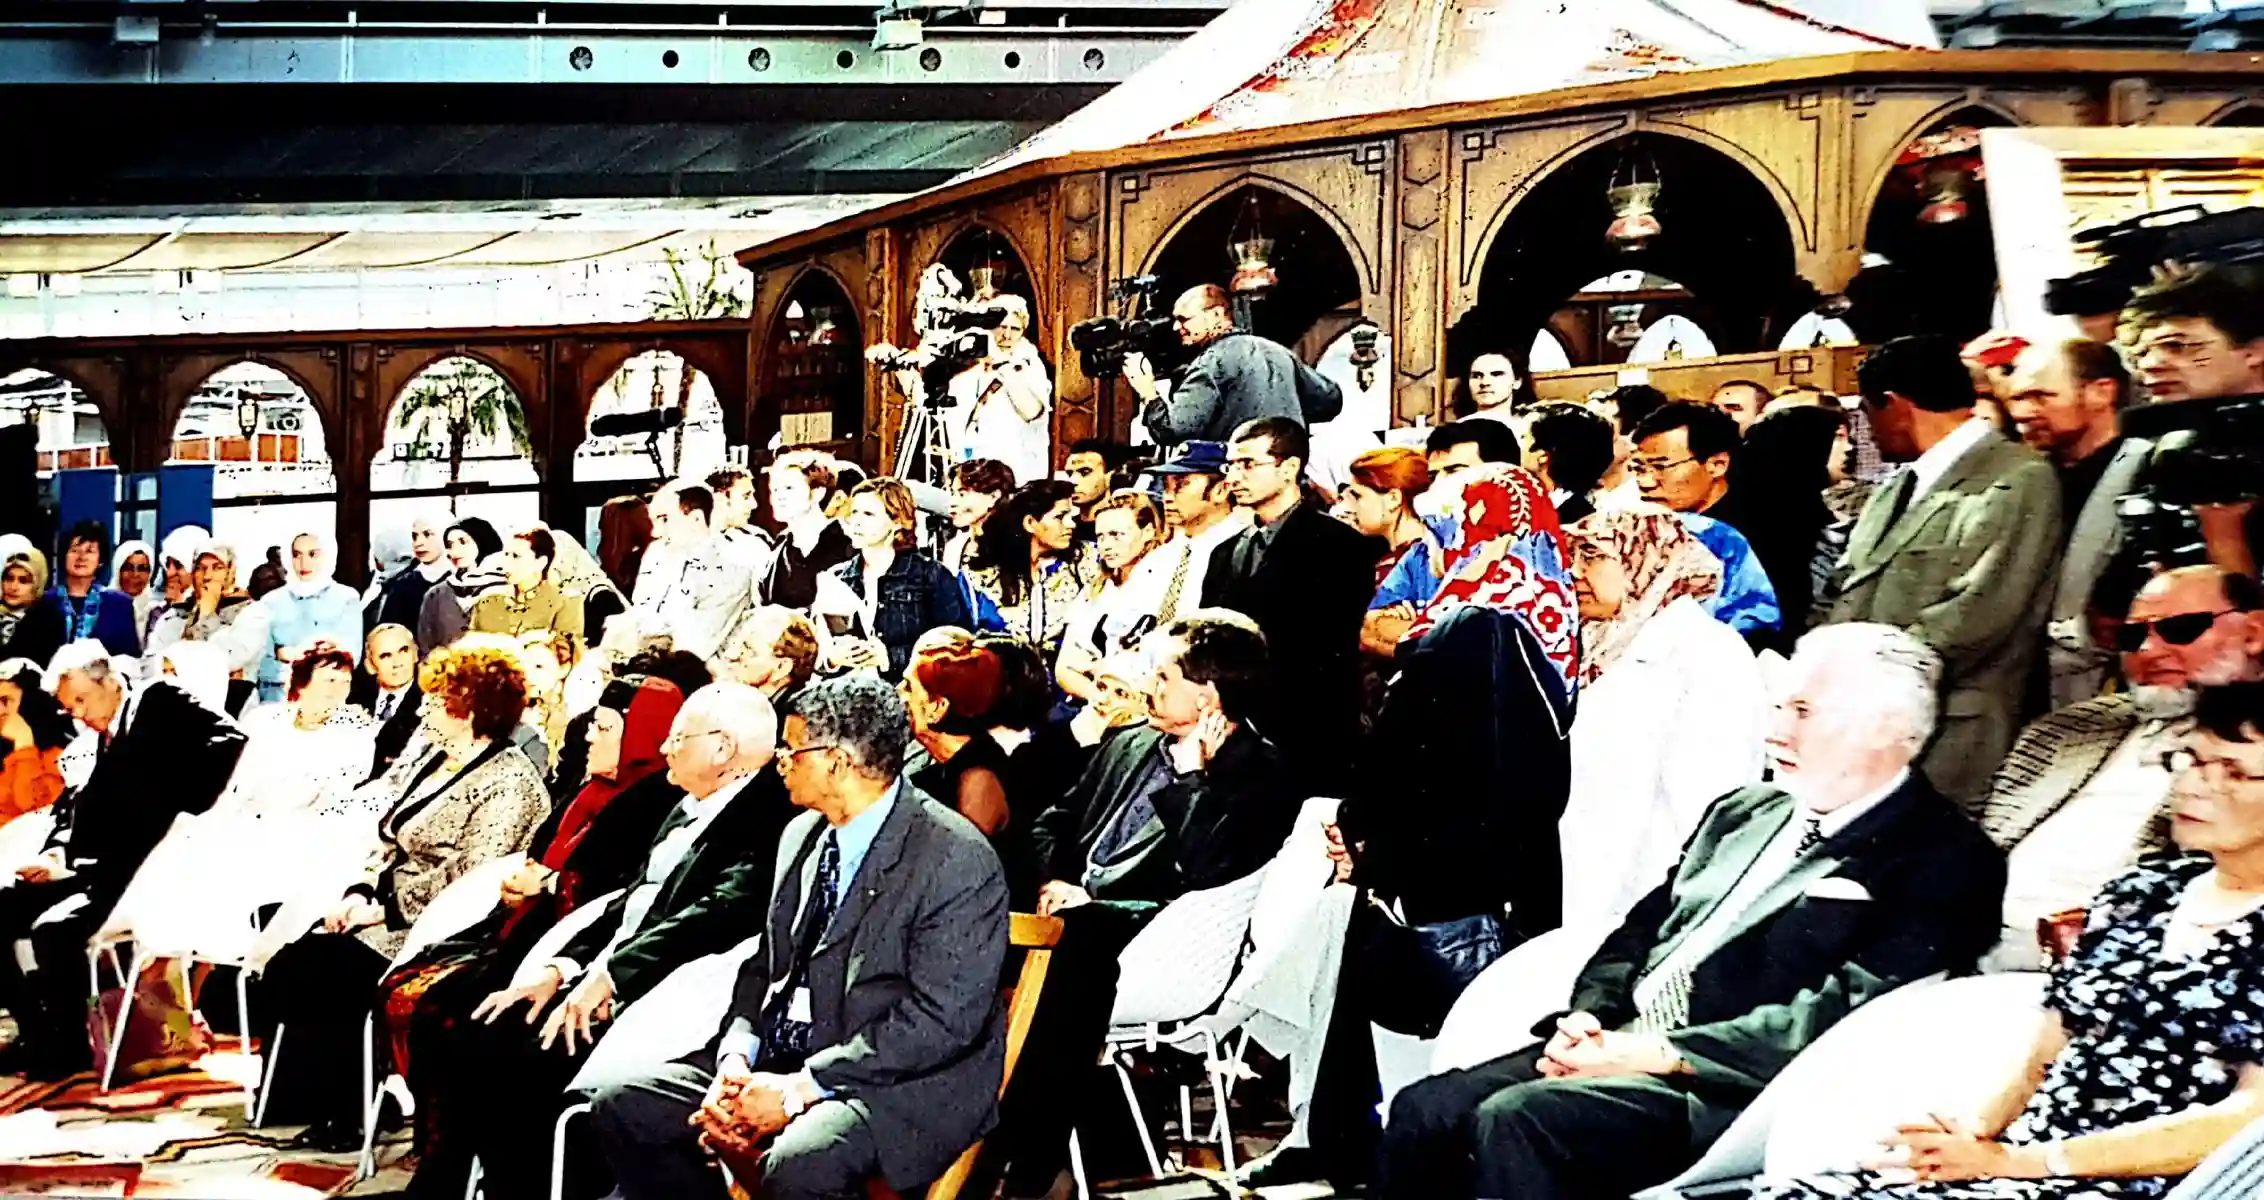 Abbildung-Besucher-des-islampavillons-bei-der-expo-in-hannover-im-jahr-2000-IISW